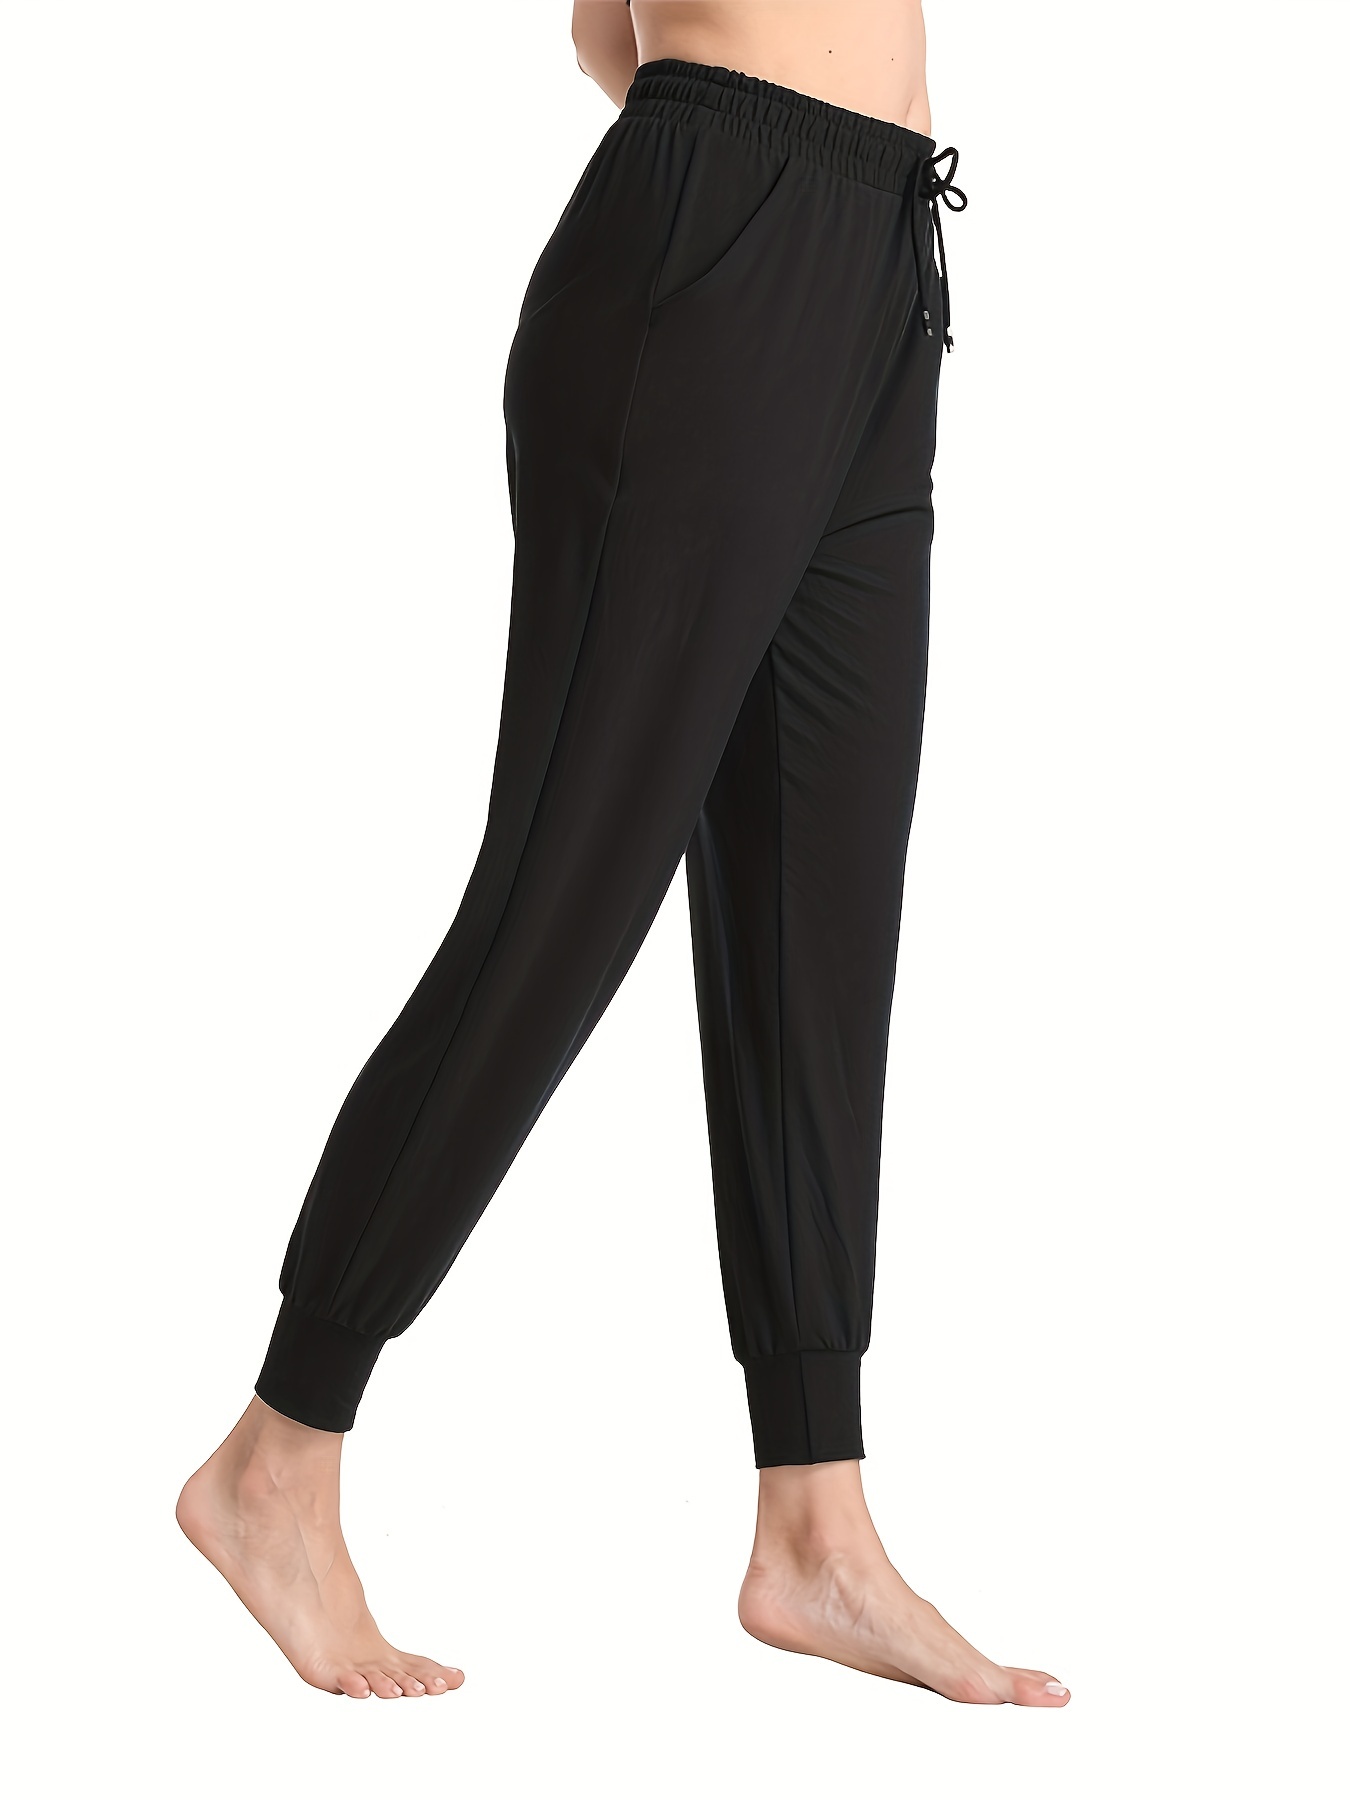  UEU - Pantalones deportivos de yoga cómodos, holgados